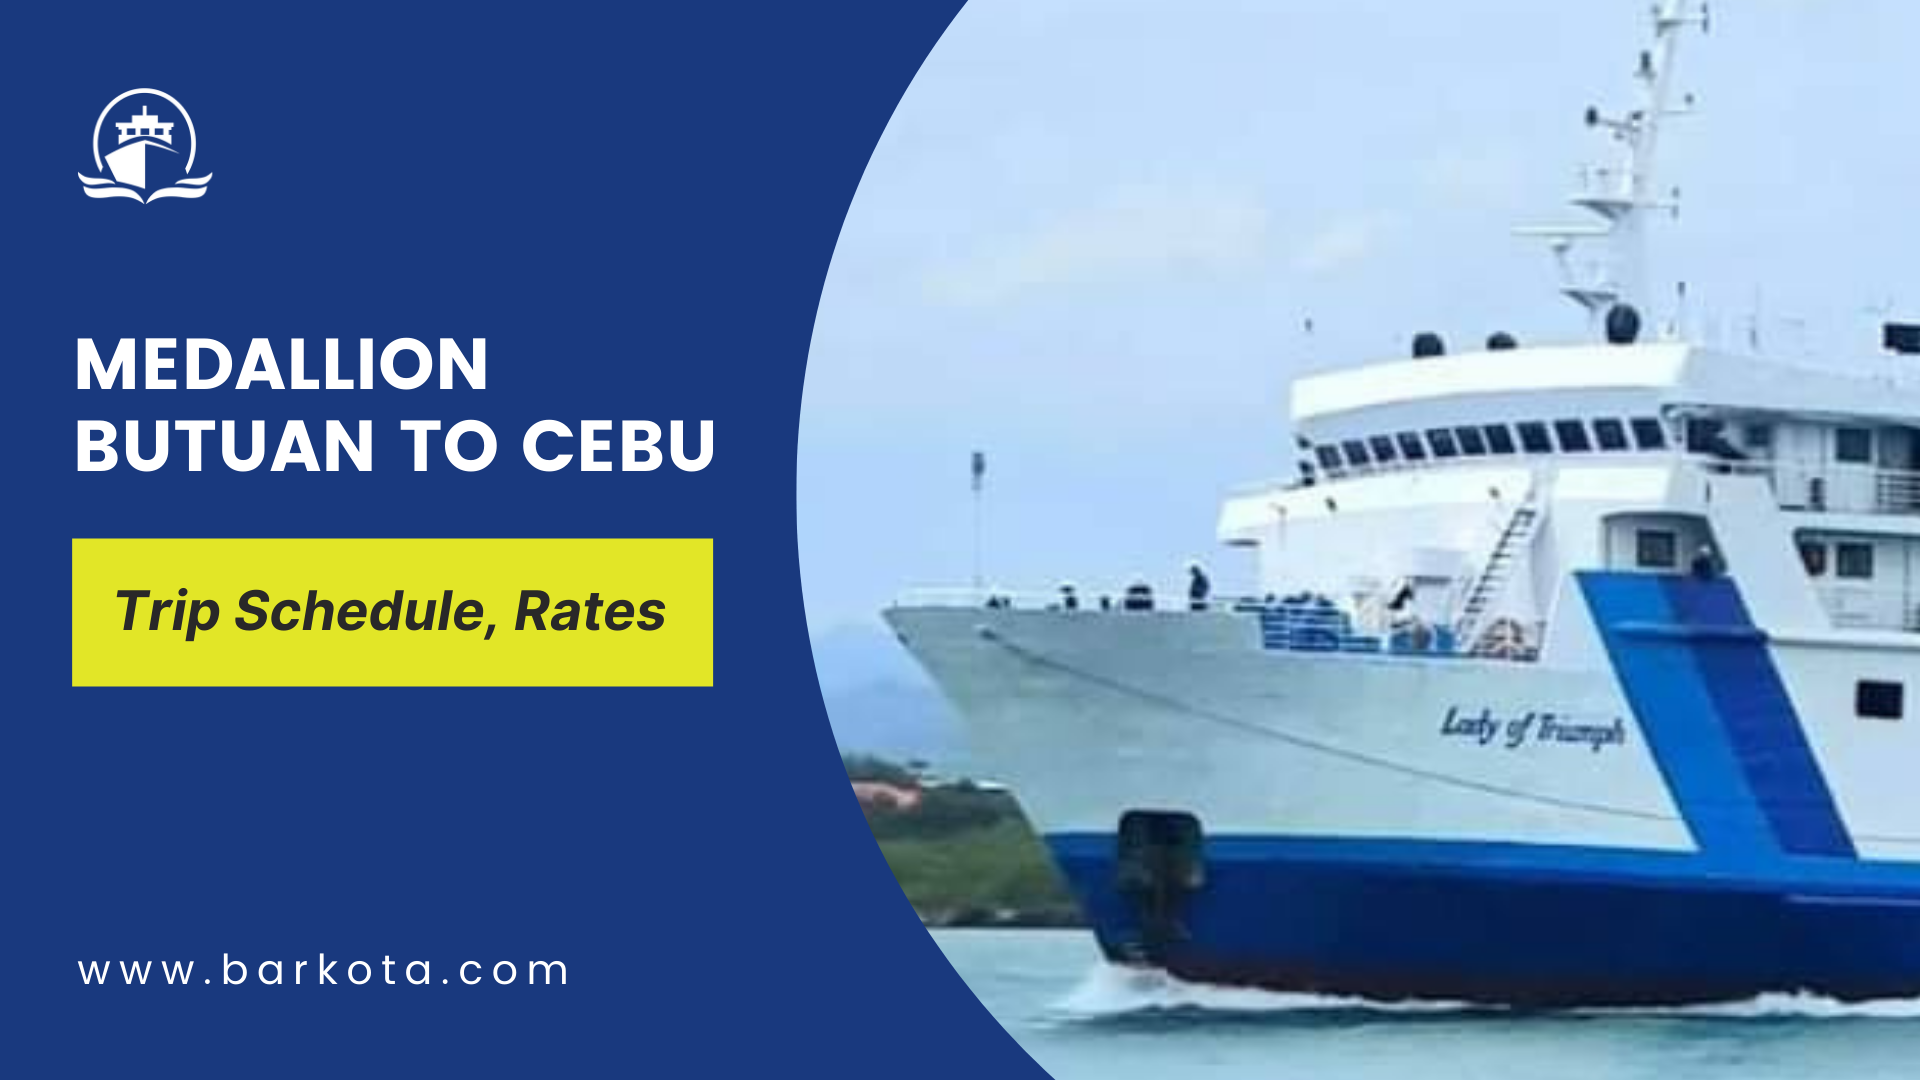 Medallion Butuan to Cebu ferry